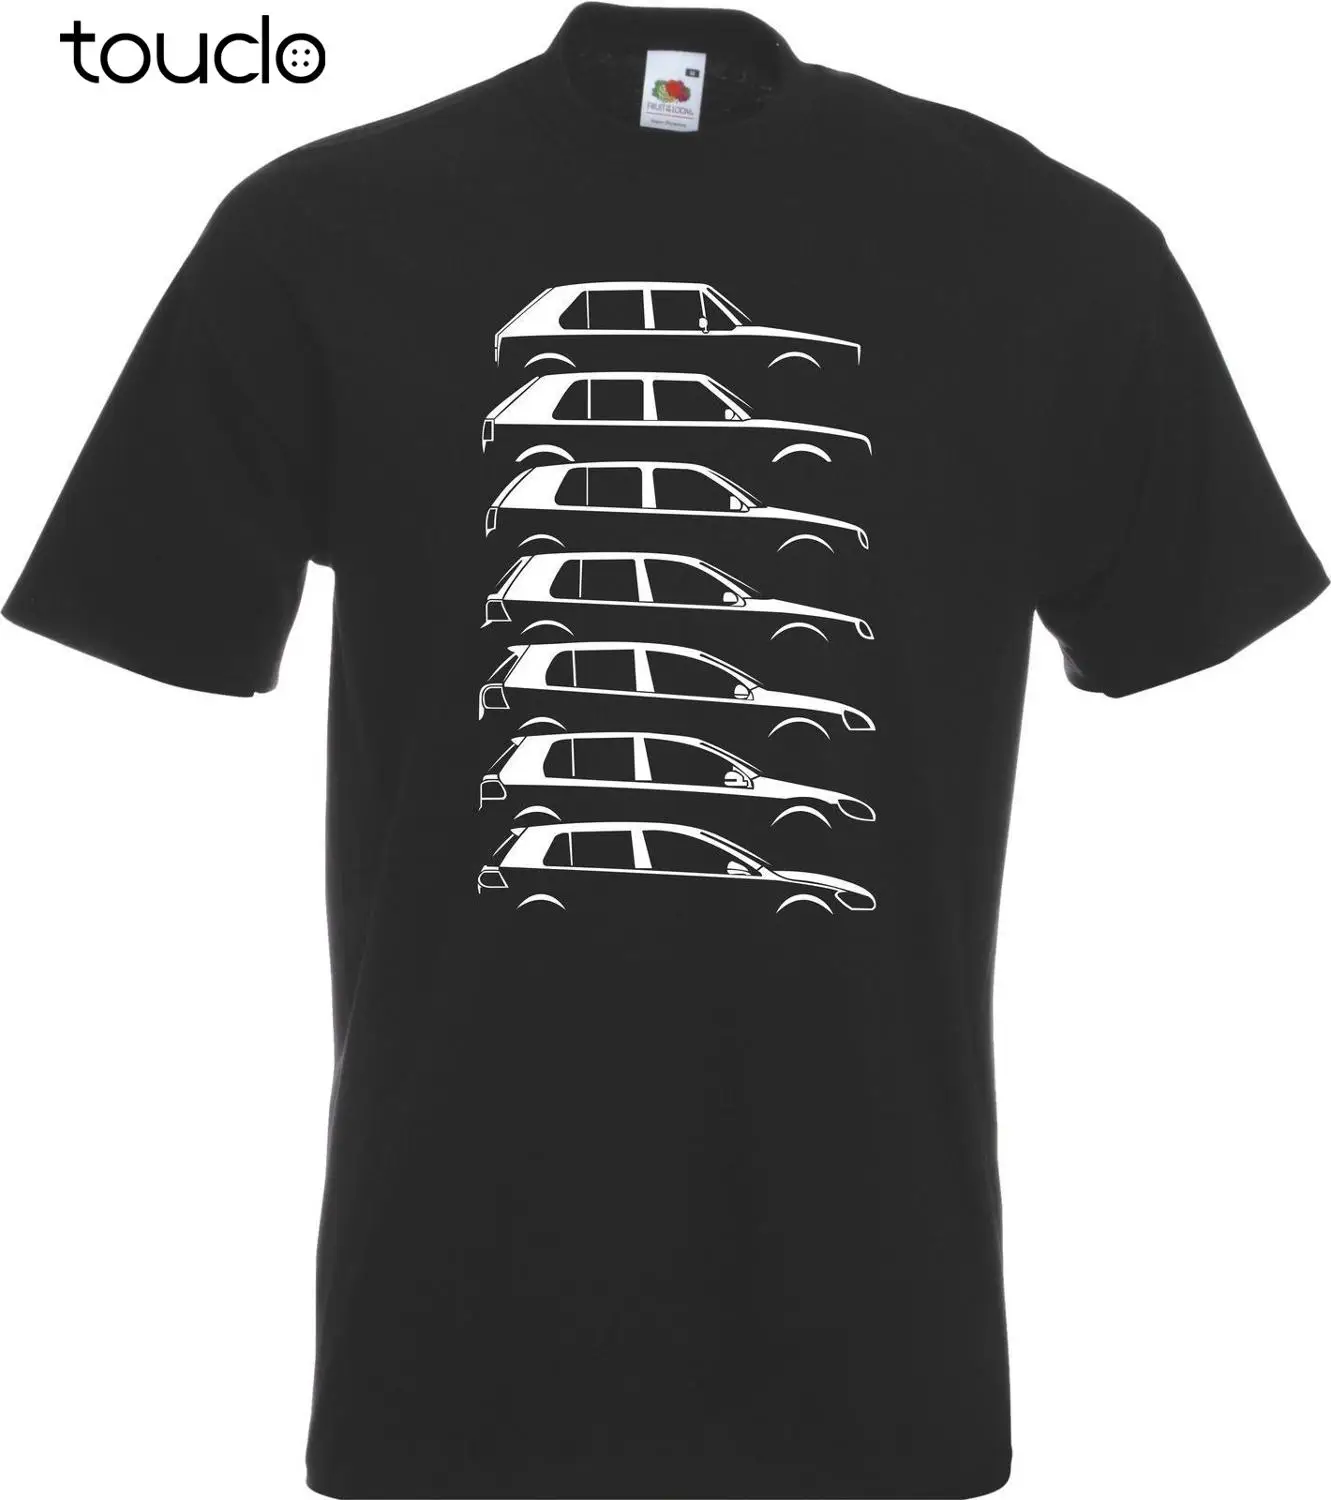 Hot sale Fashion Evolution Golfs GTI Vdub Mk inspired Evolution T-Shirt  T Shirt Tee shirt